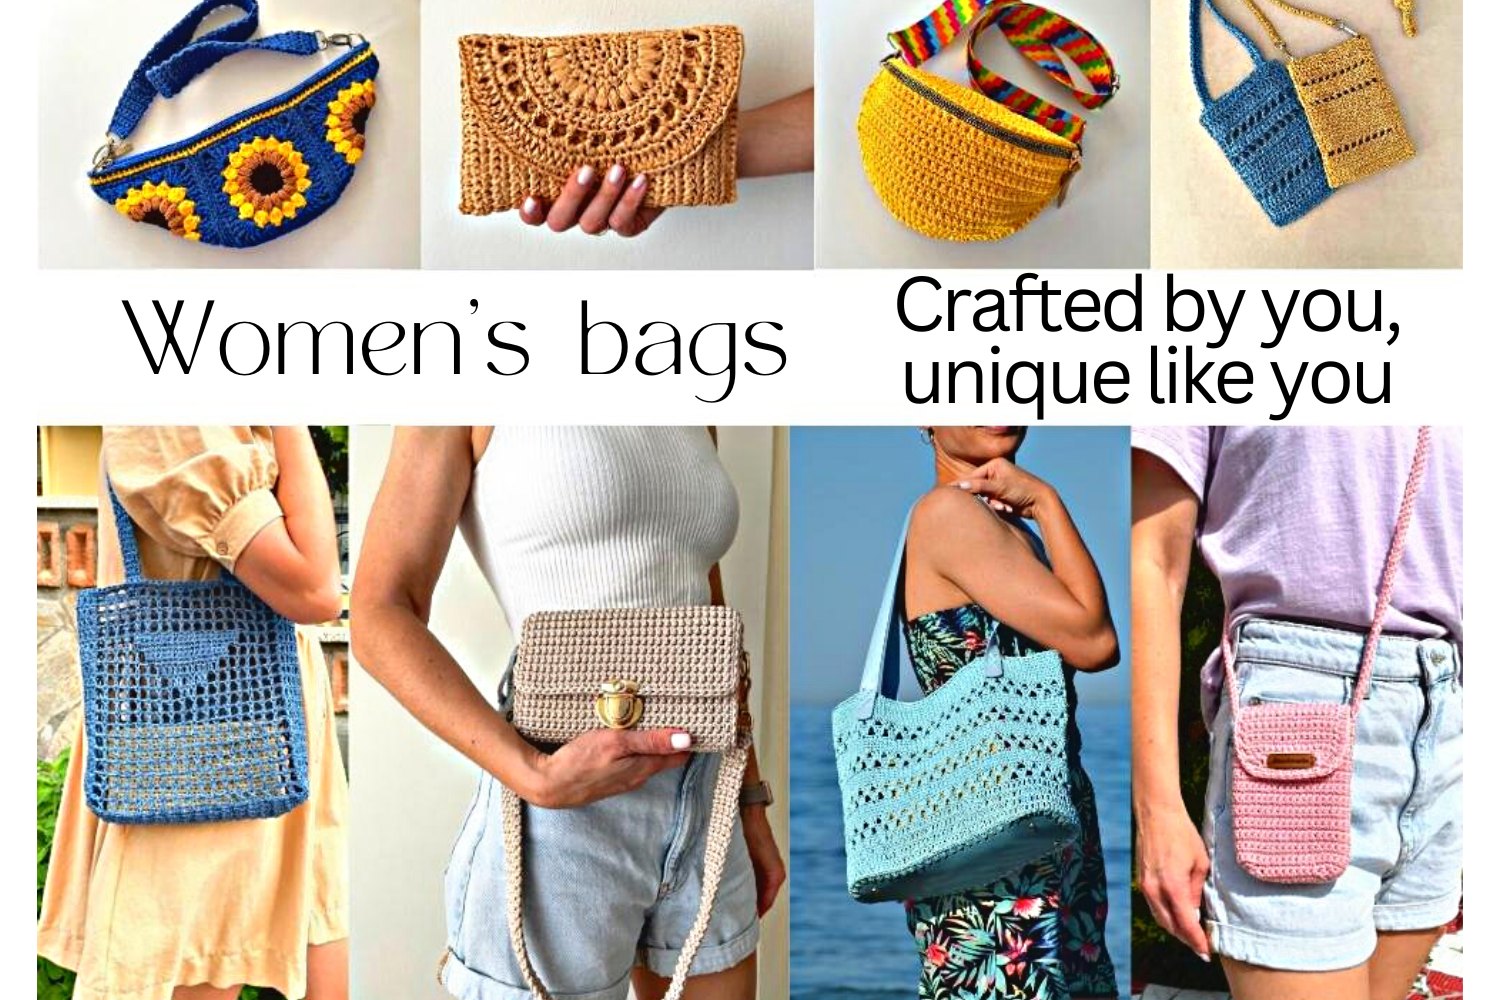 crochet bag, purse, handbag patterns